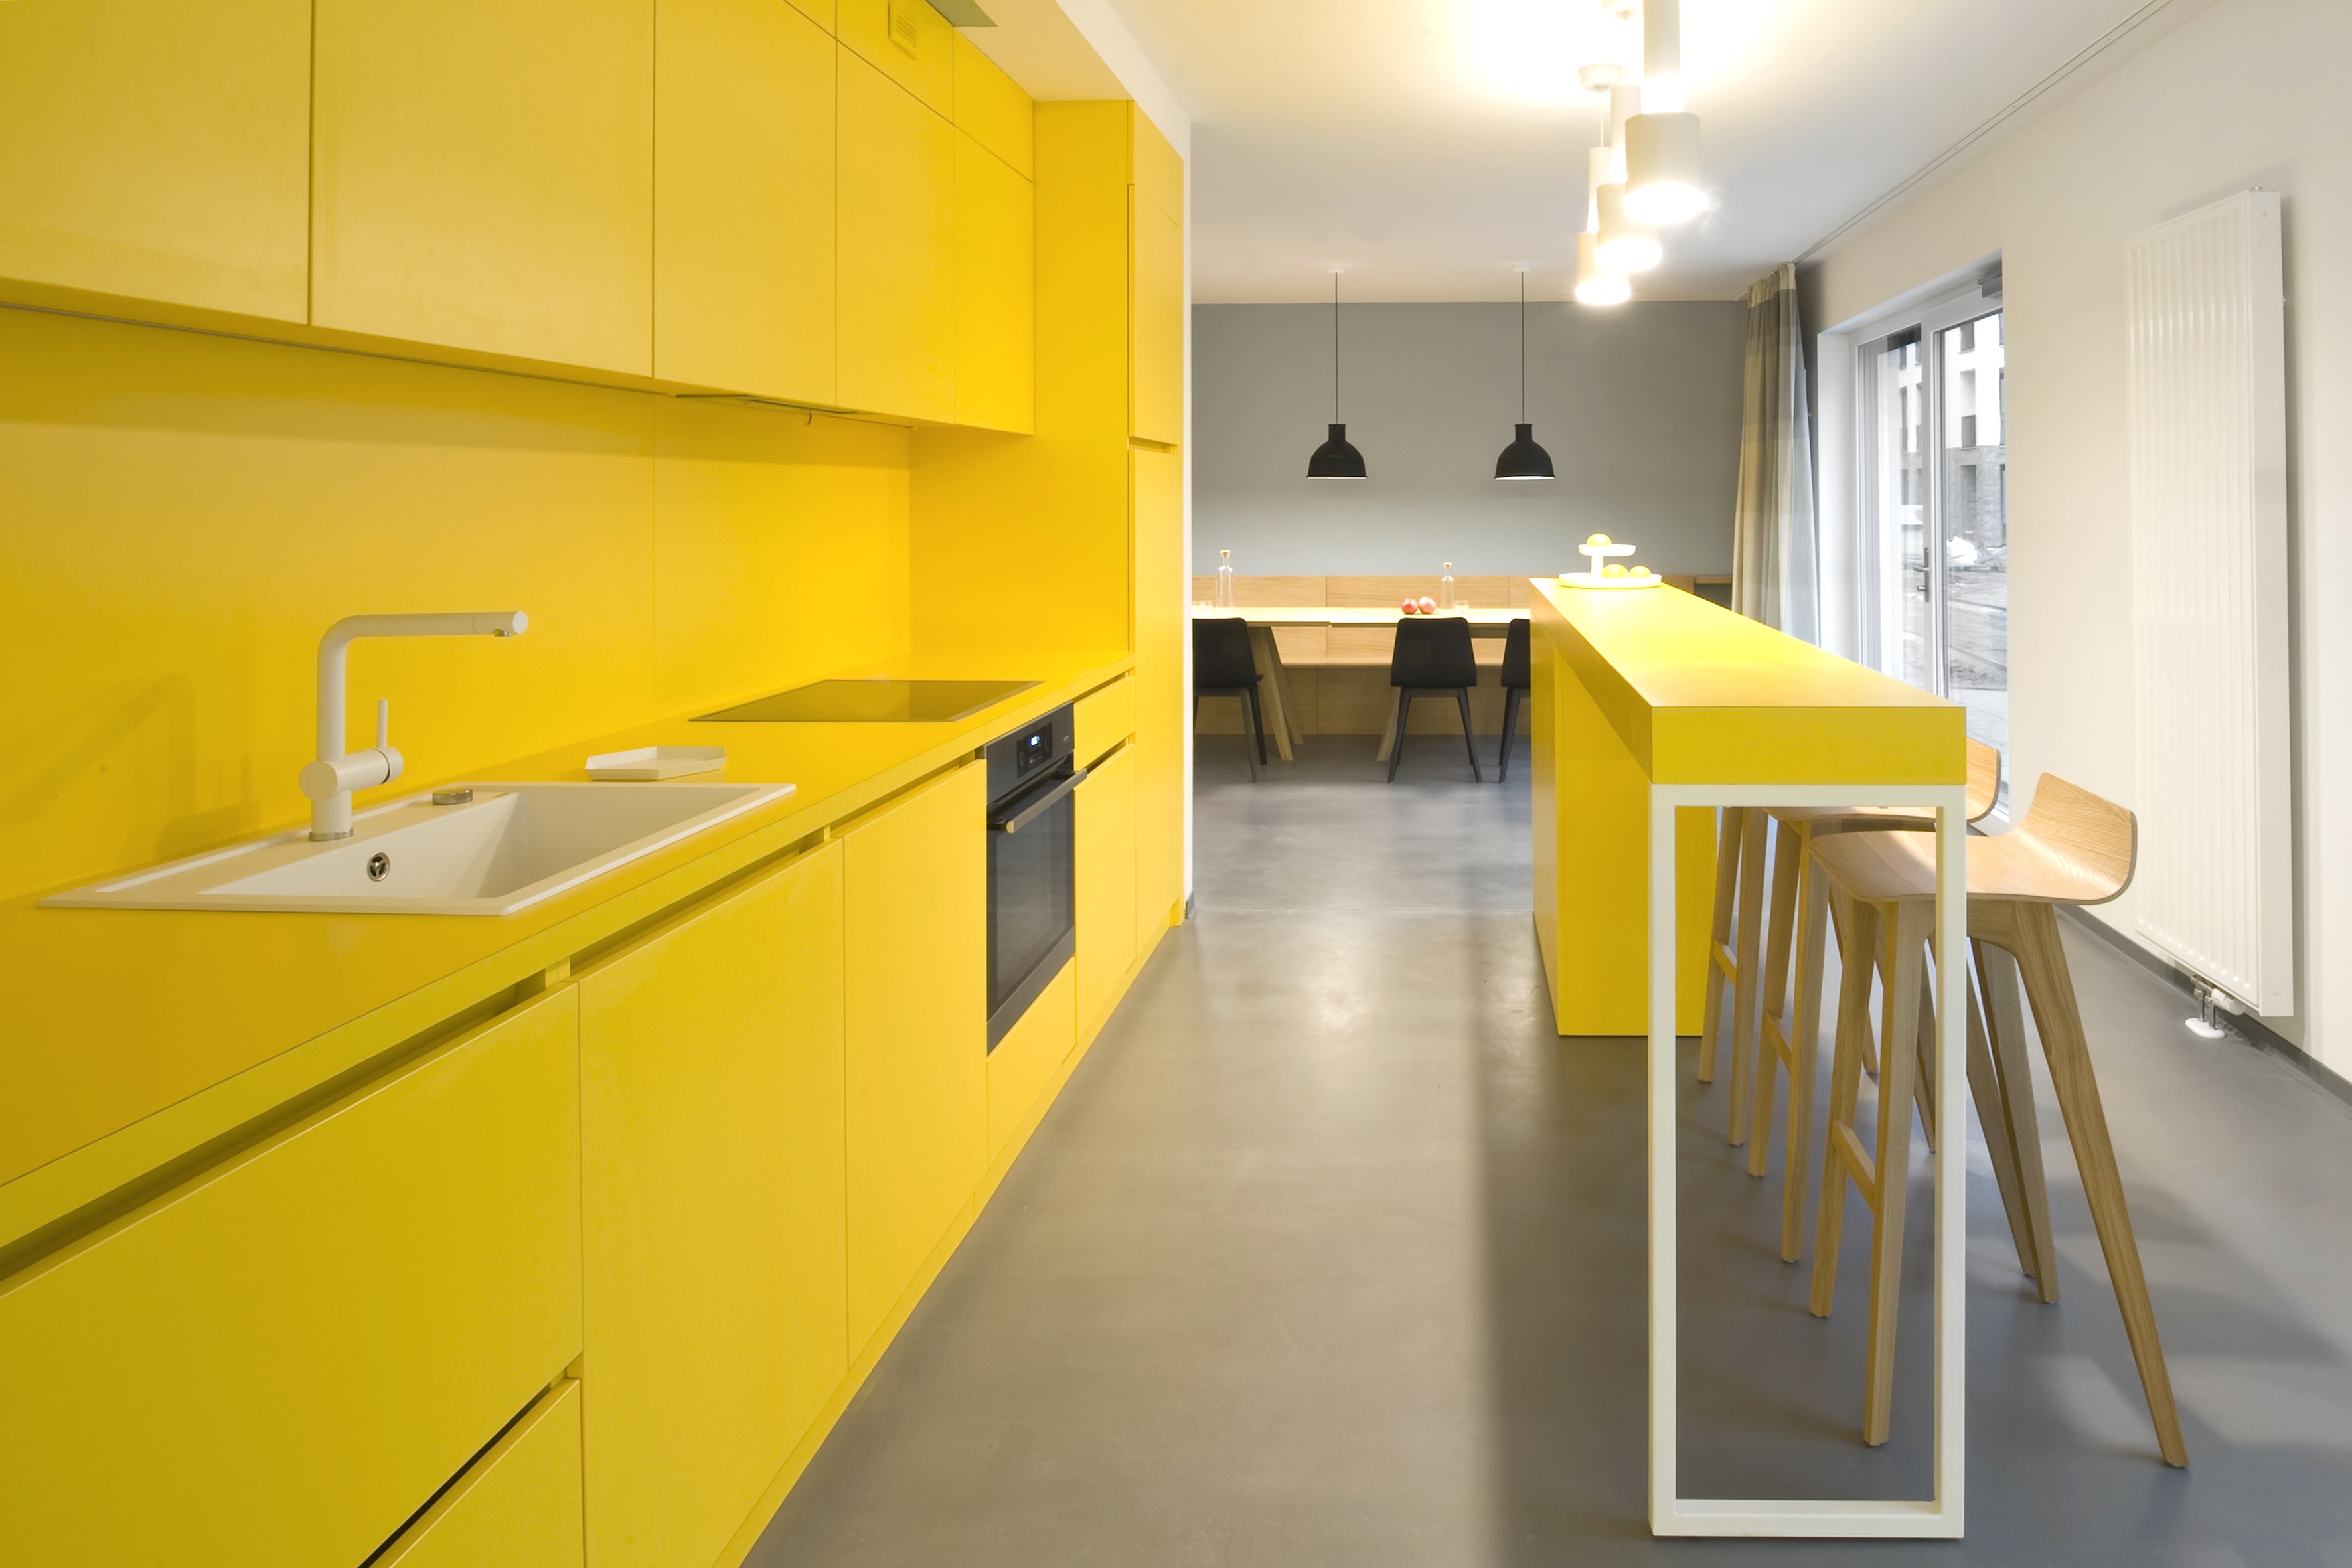 Желтый фартук. Кухня в желтом цвете. Желтая кухня в интерьере. Кухня лимонного цвета. Бело желтая кухня.